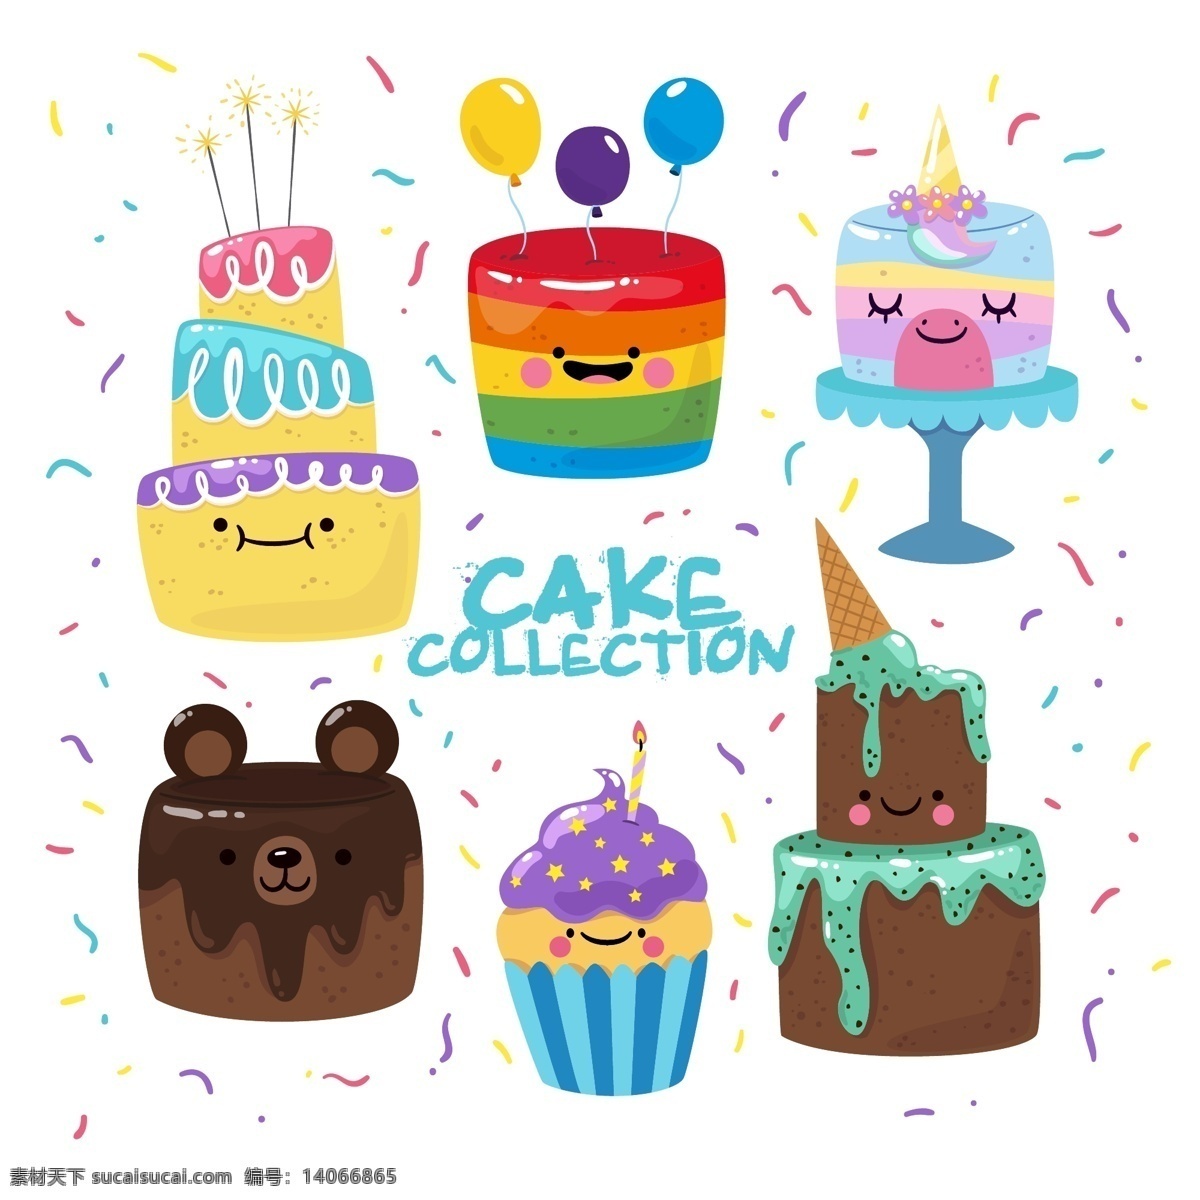 多款蛋糕 生日素材 彩色卡通蛋糕 卡通蛋糕 蛋糕 蜡烛 设计素材 生活百科 餐饮美食